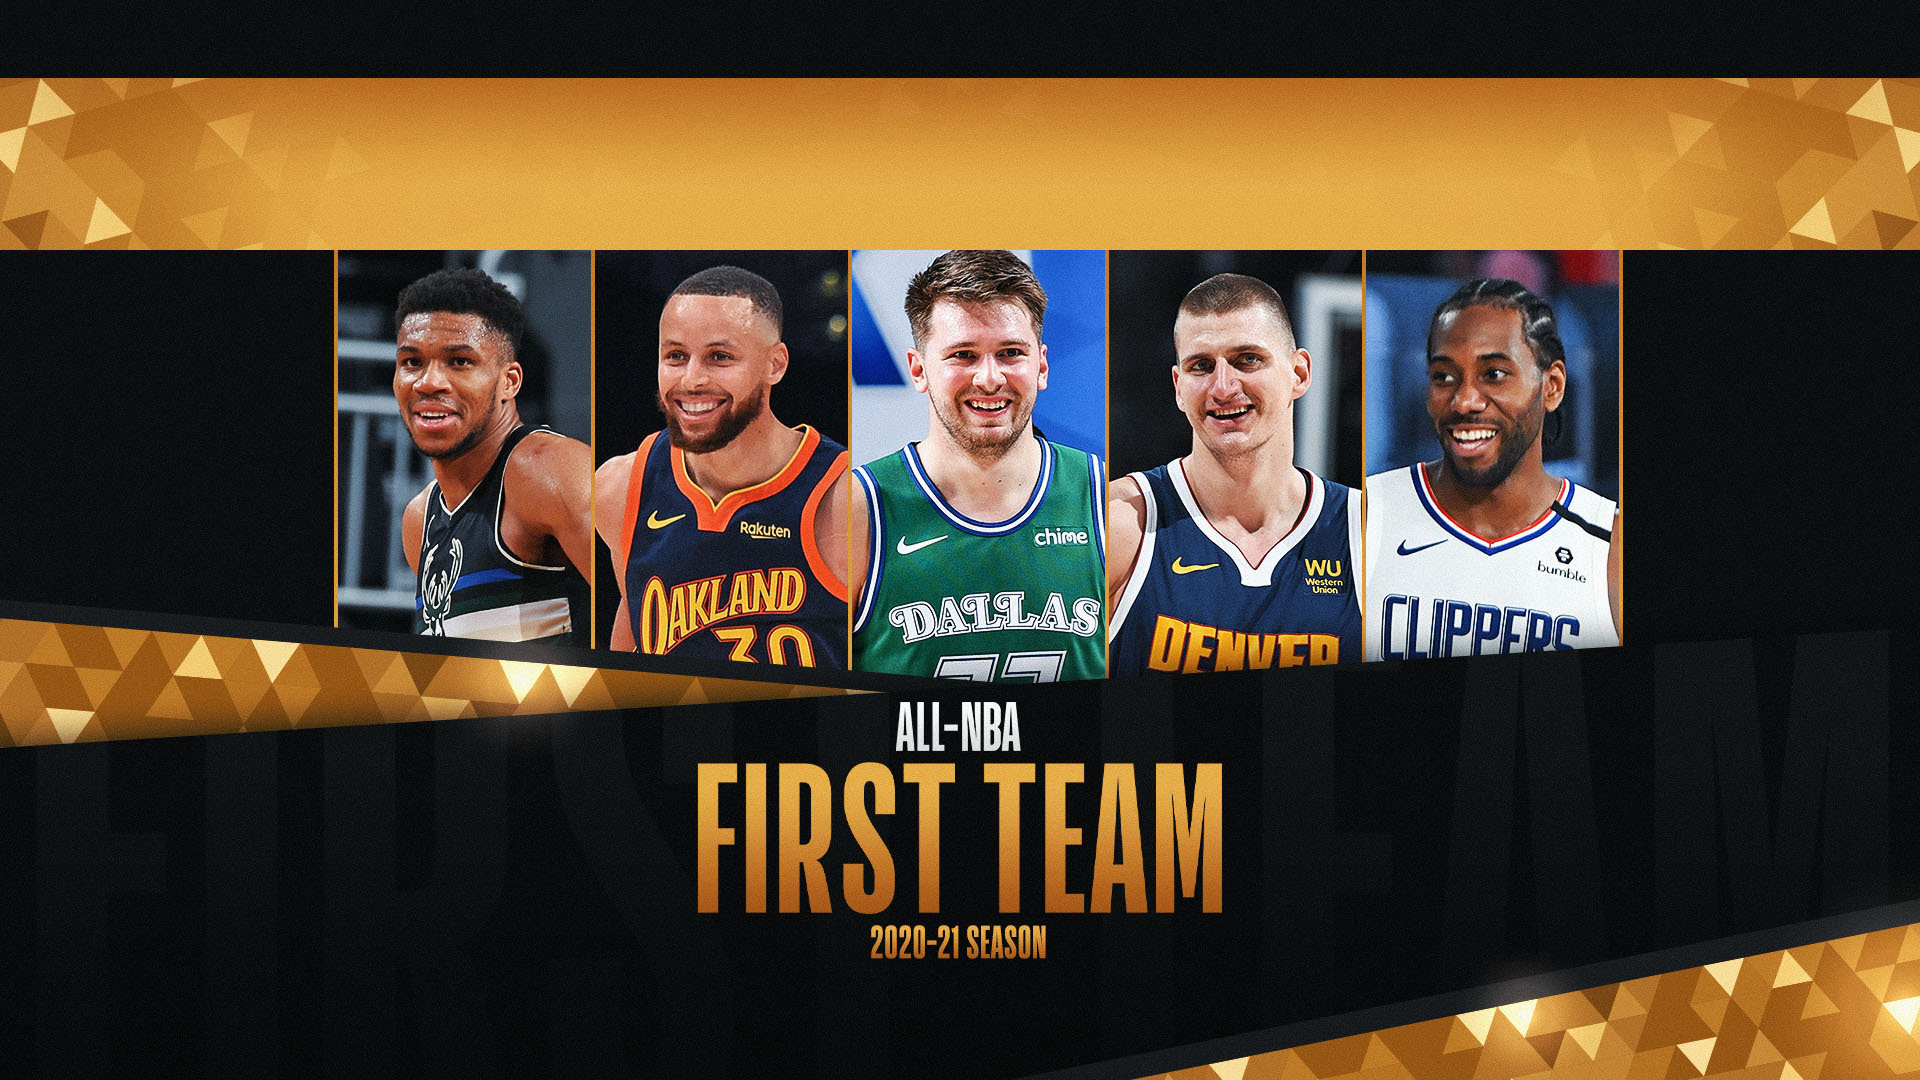 Nikola Jokic, Giannis Antetokounmpo, Stephen Curry lead 2020-21 All-NBA First Team